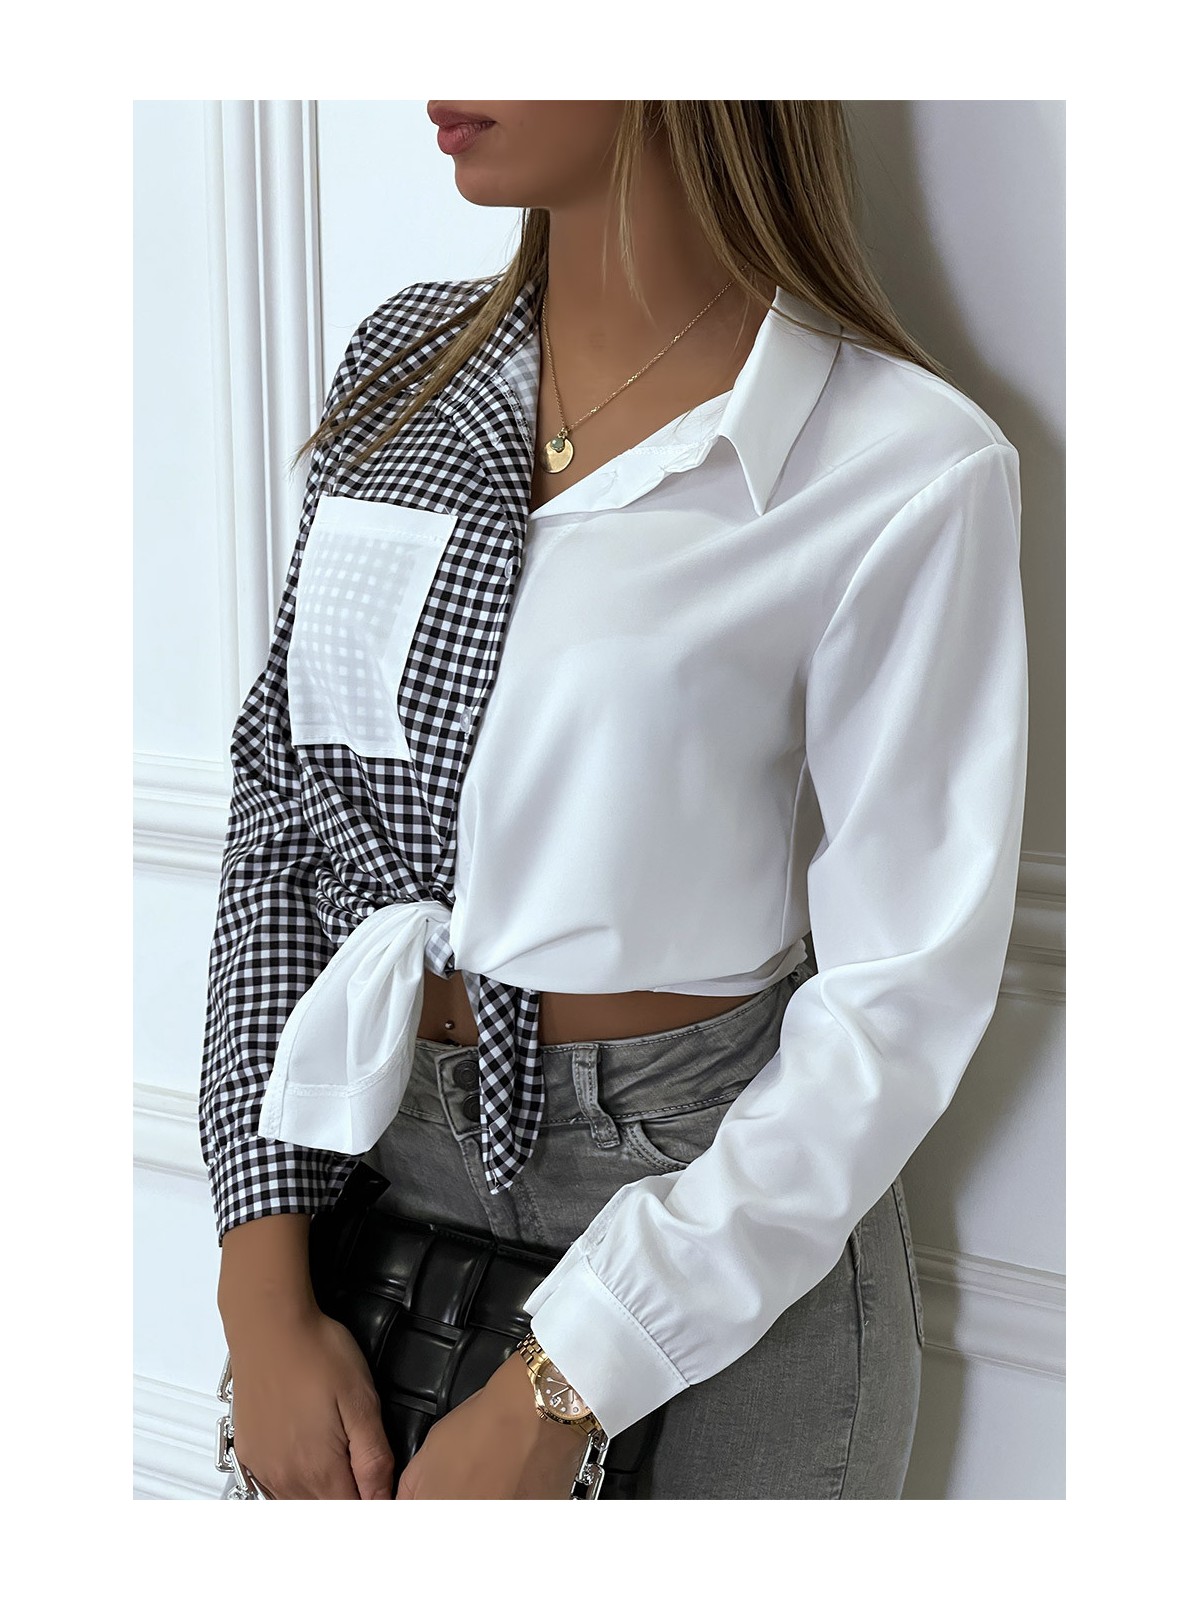 Chemise blanche bicolor à carreaux blanc et noir - 3